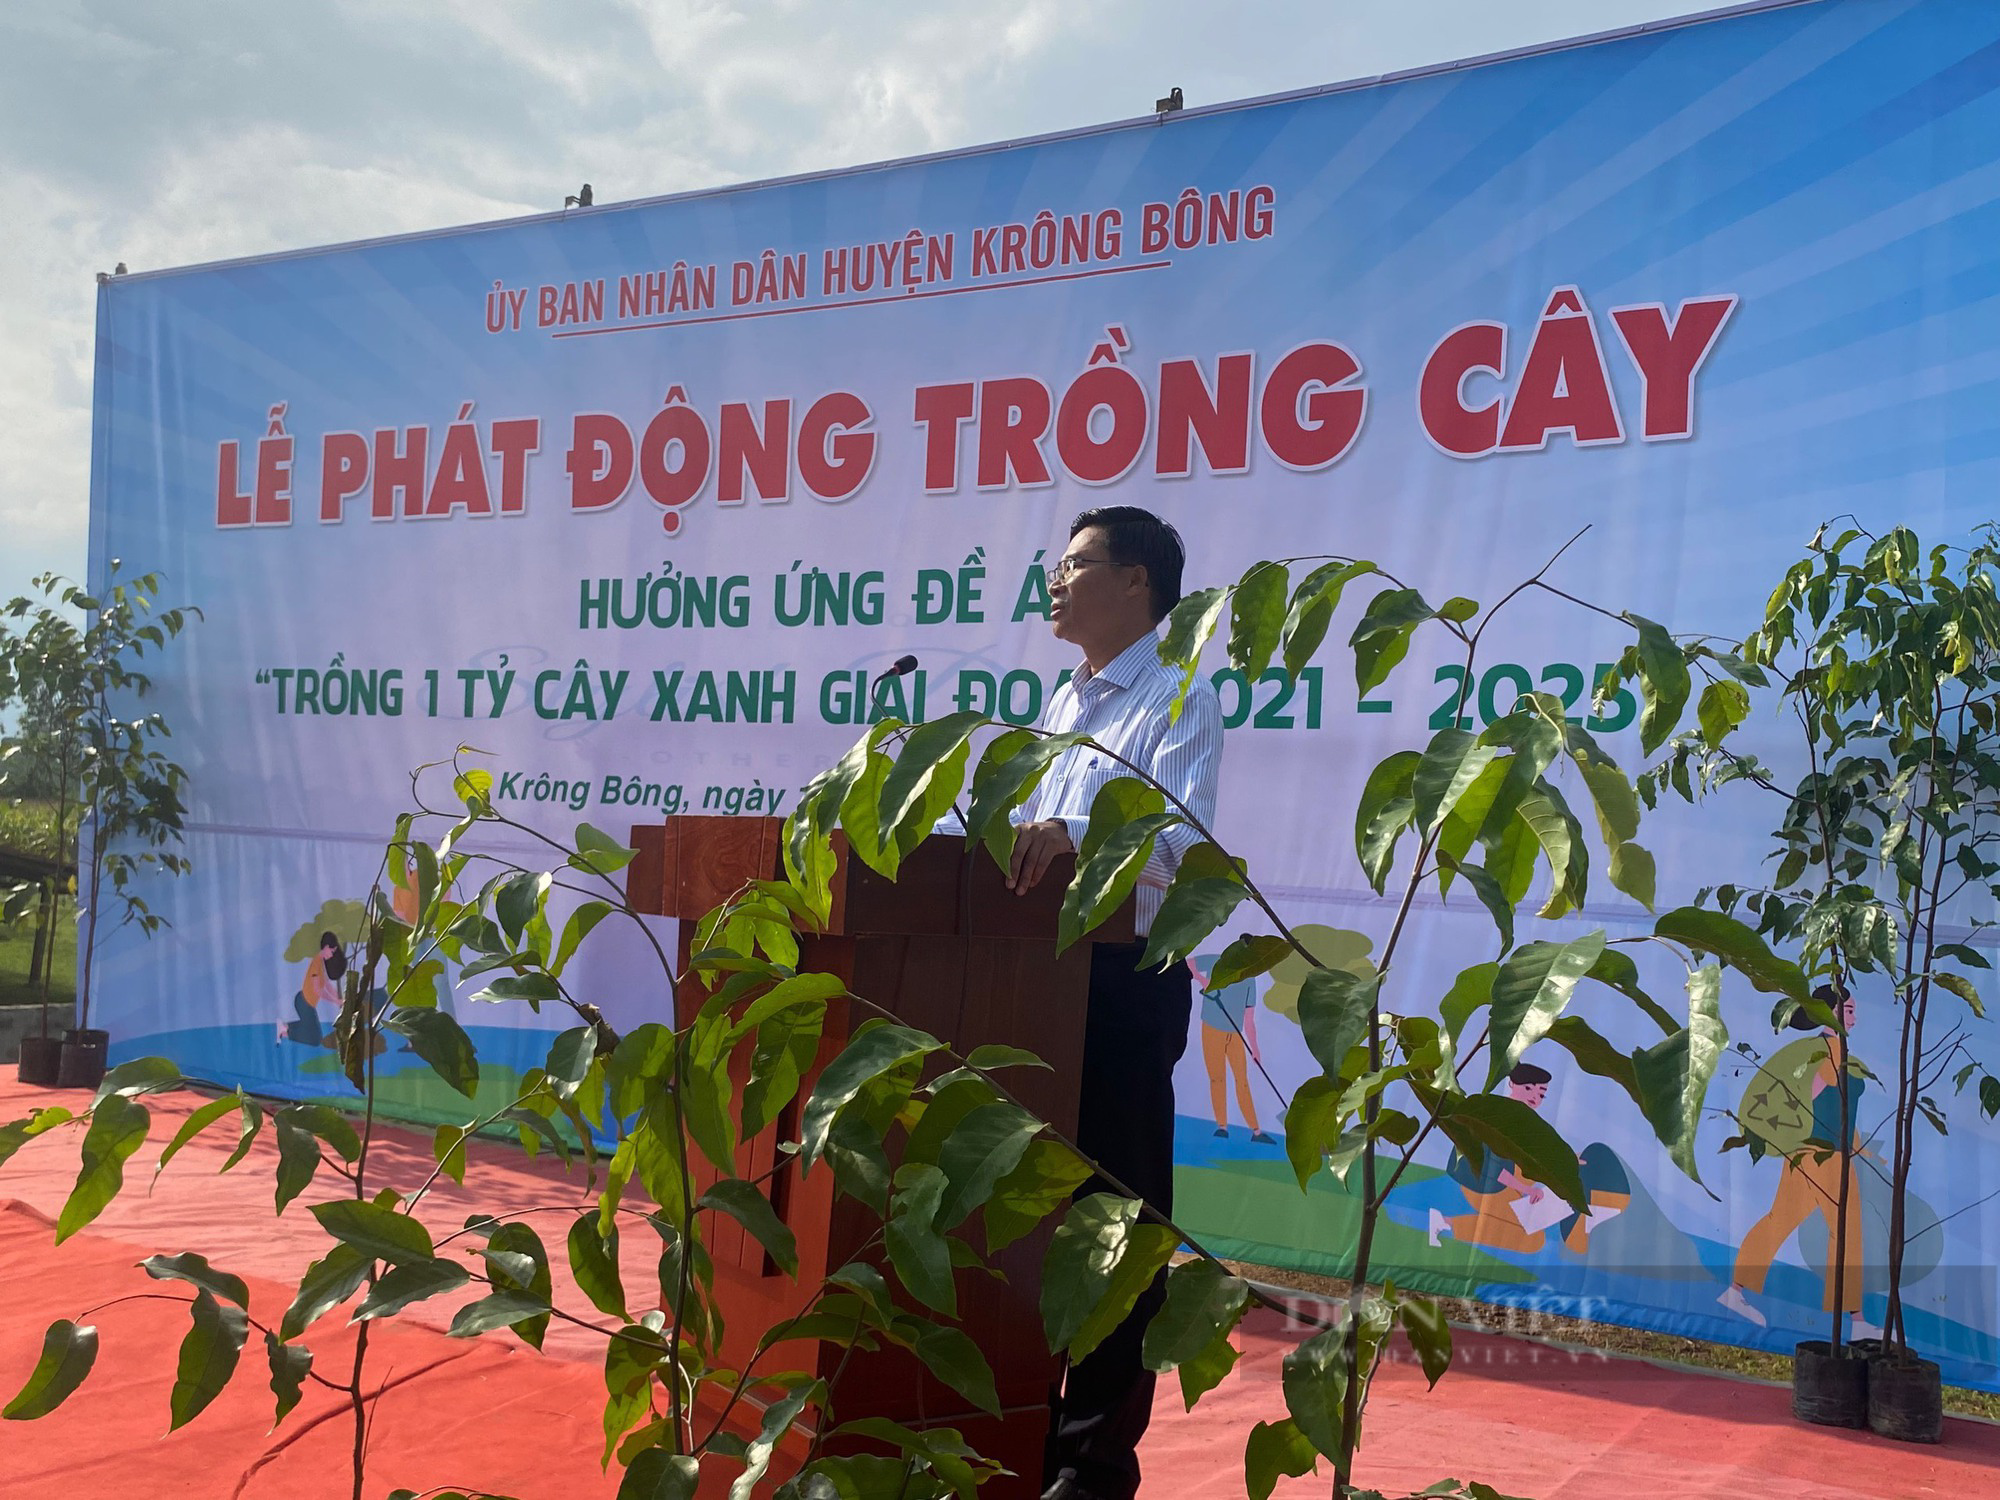 Đắk Lắk: Phủ xanh gần 4.000 cây sao đen tại huyện anh hùng Krông Bông - Ảnh 1.